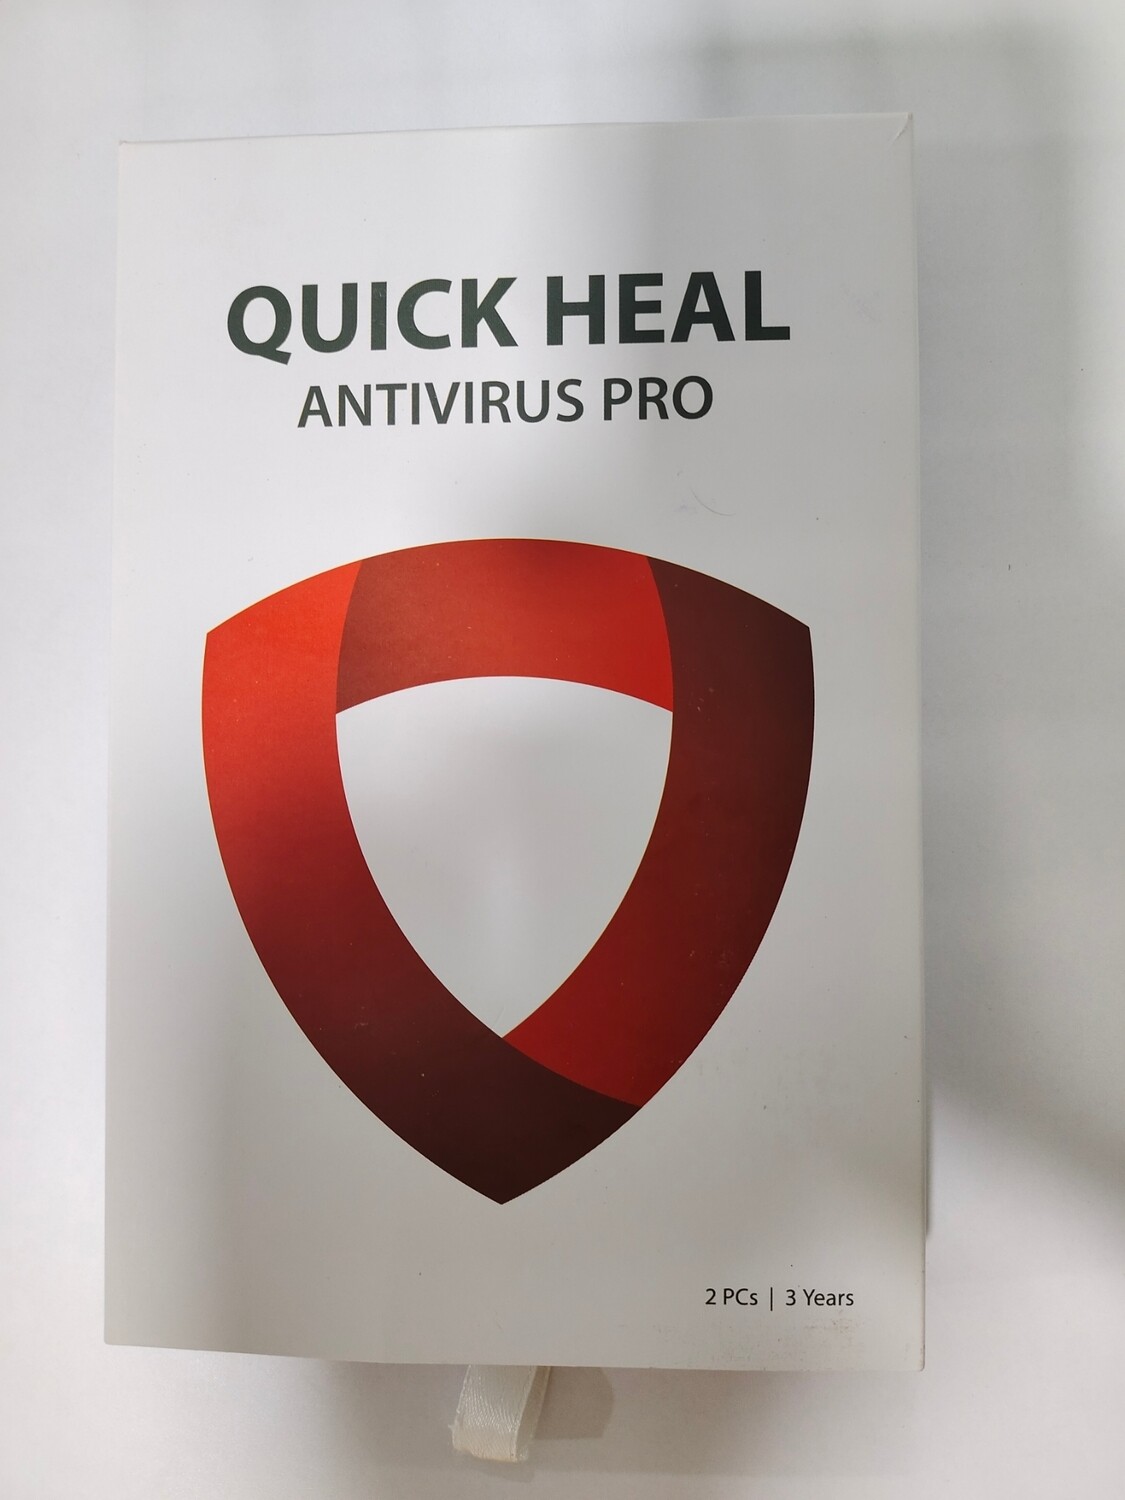 New, 2 User, 3 Year, Quick Heal Antivirus Pro